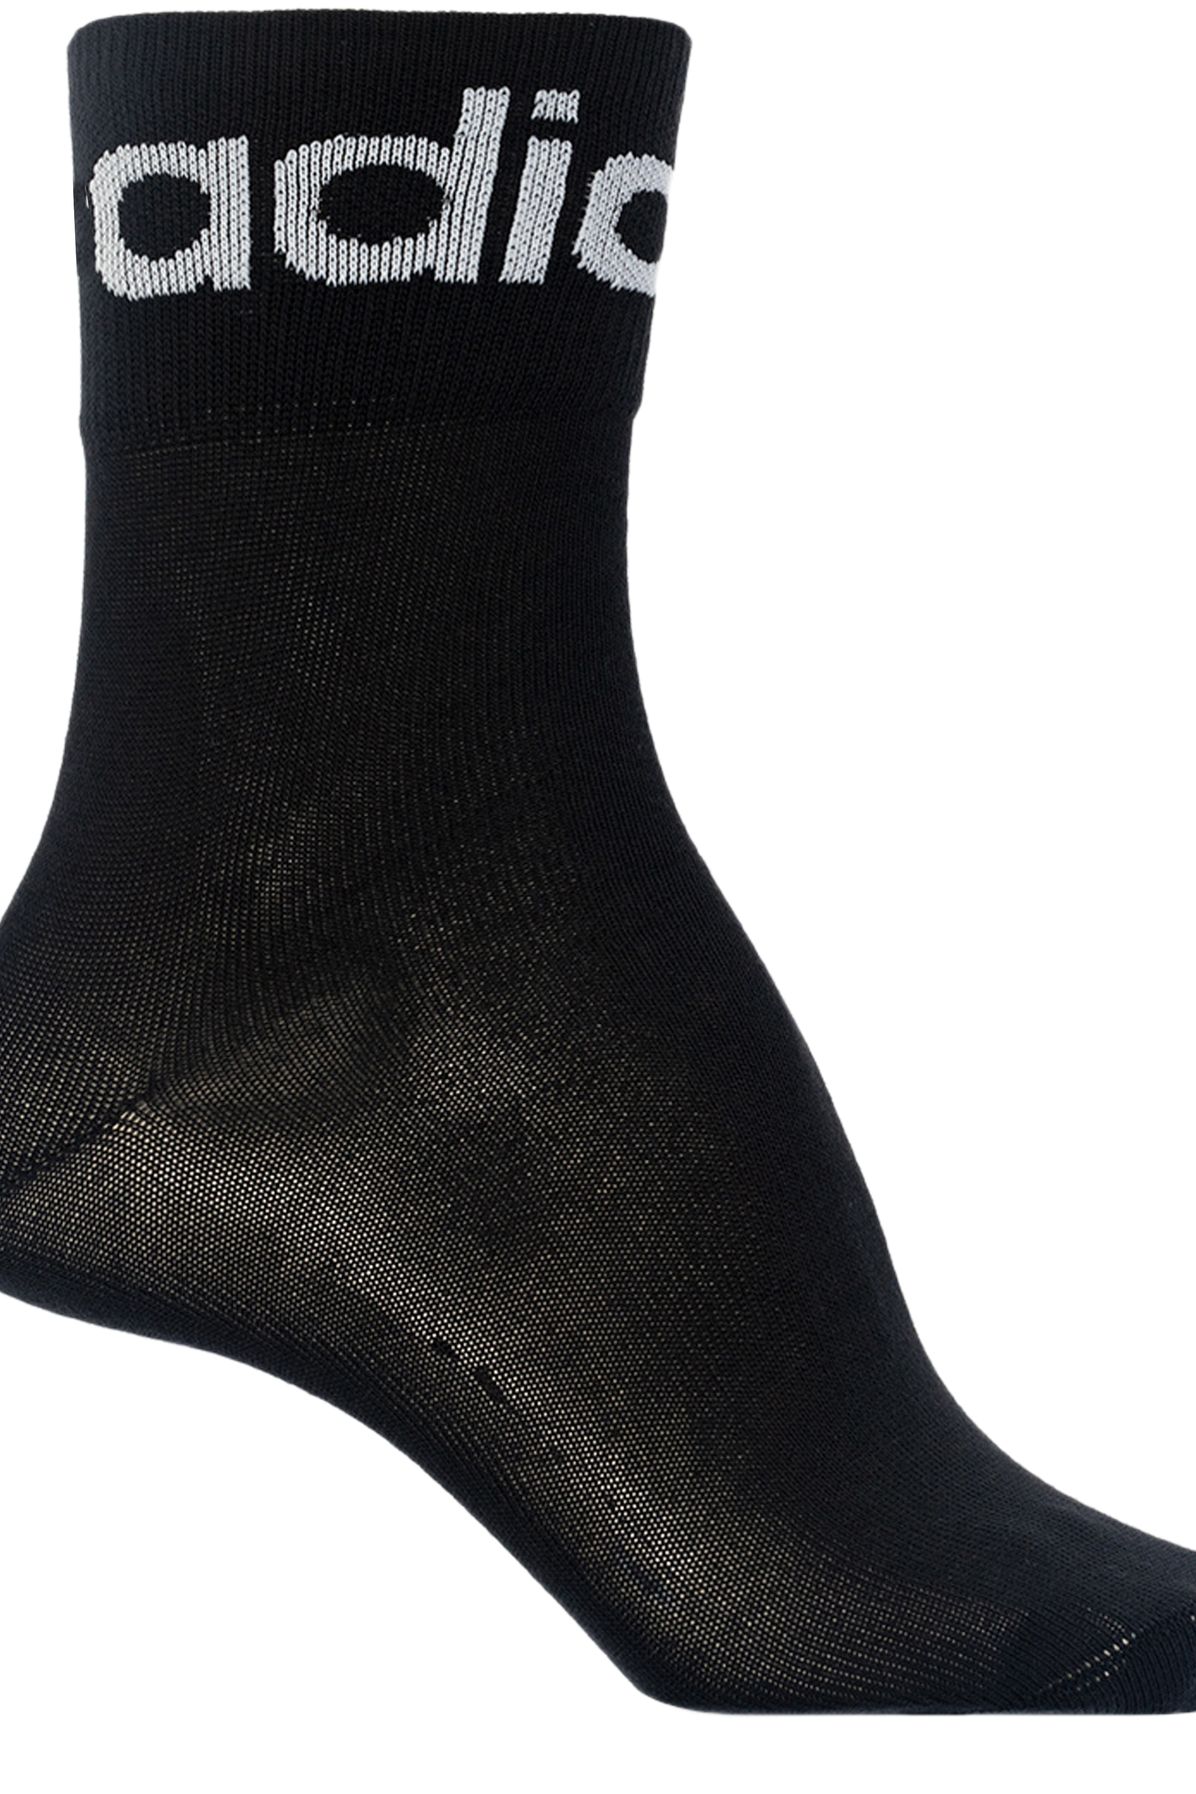 Adidas Originals Socks with logo